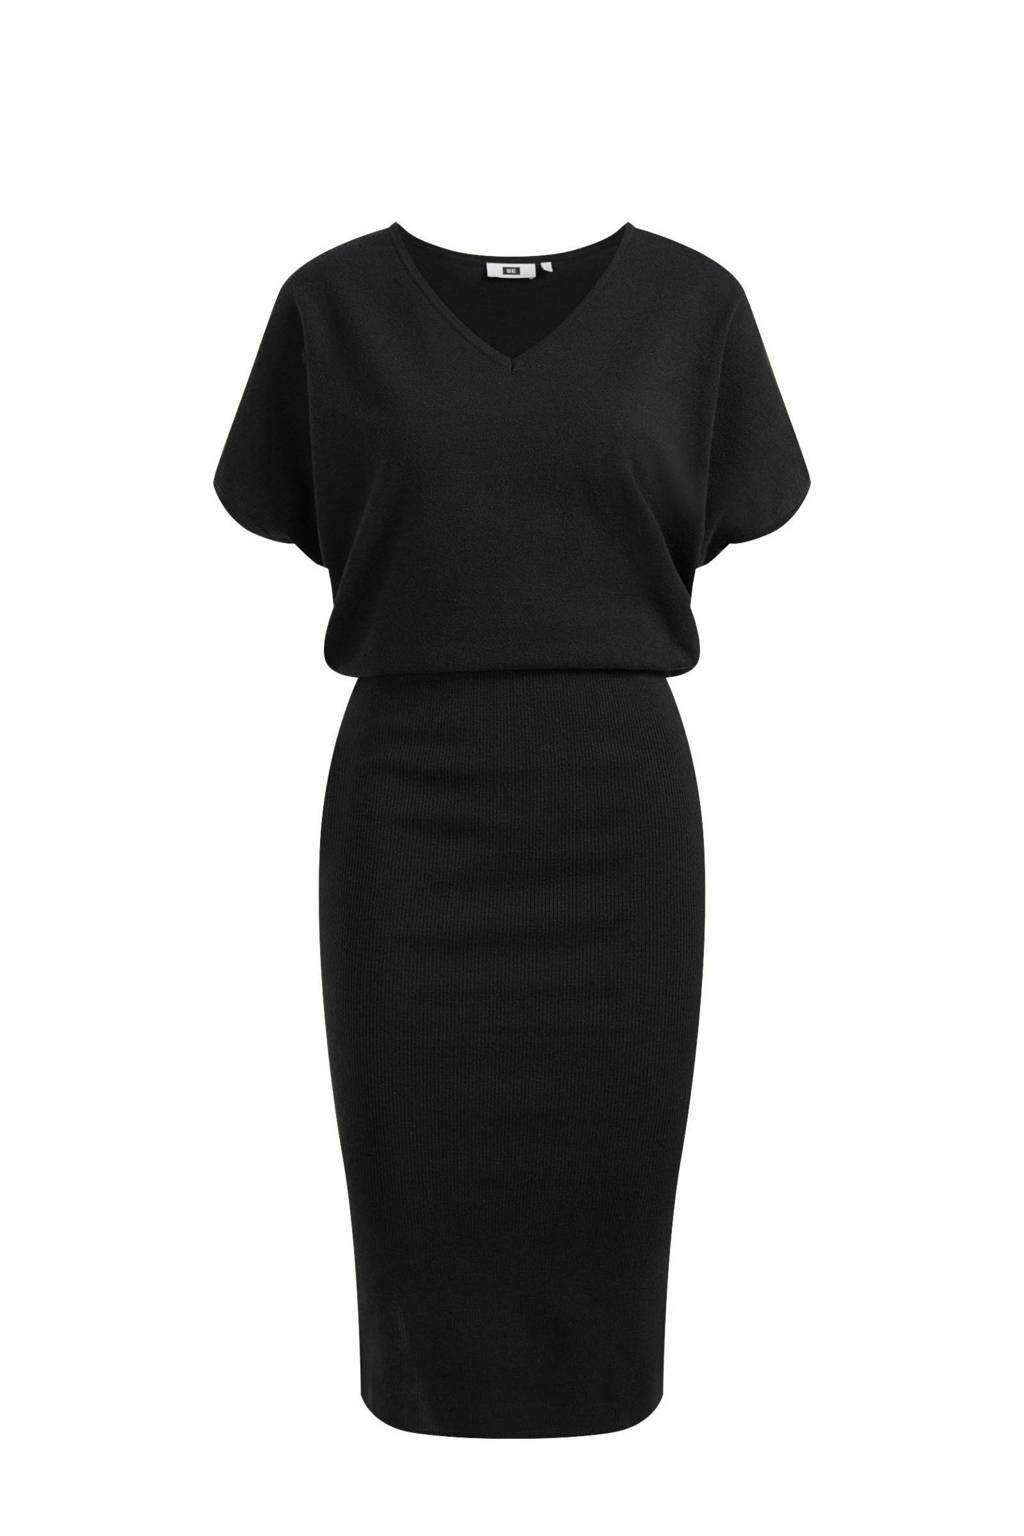 Fashion fijngebreide jurk zwart wehkamp